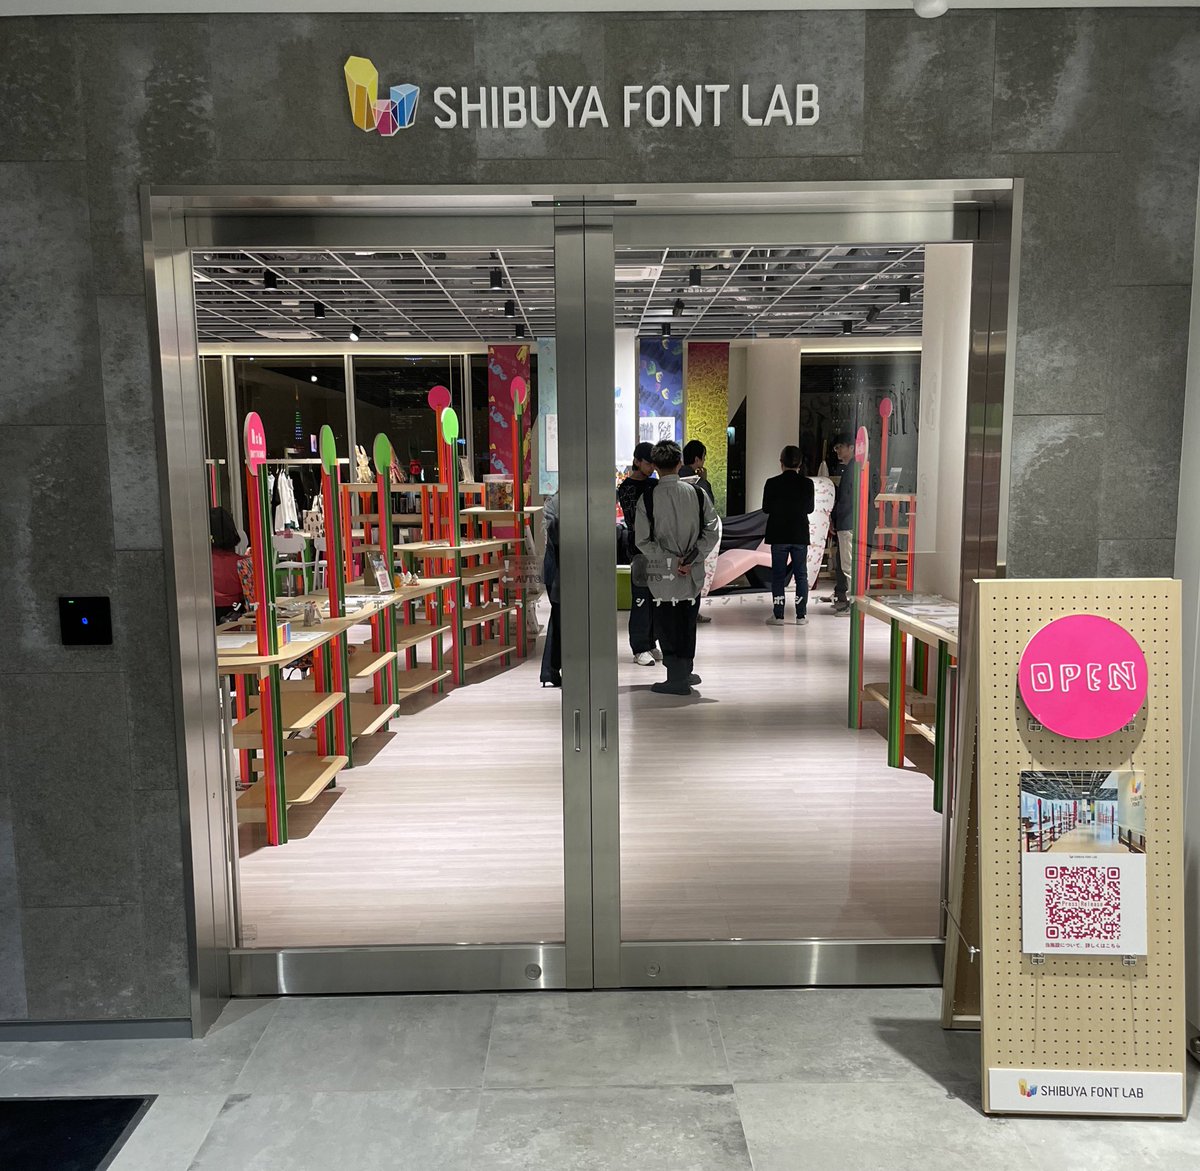 本日は4月17日に開業する #ハラカド 内 #シブヤフォント の新拠点シブヤフォントラボの内覧会にご招待頂きました✨ イベントスペースには可愛らしいアートの壁紙が使用され素敵な空間となっておりました😊 5/5にはファッションショーも行われますので是非お楽しみ💚 #TOKYODIME #渋谷から世界へ